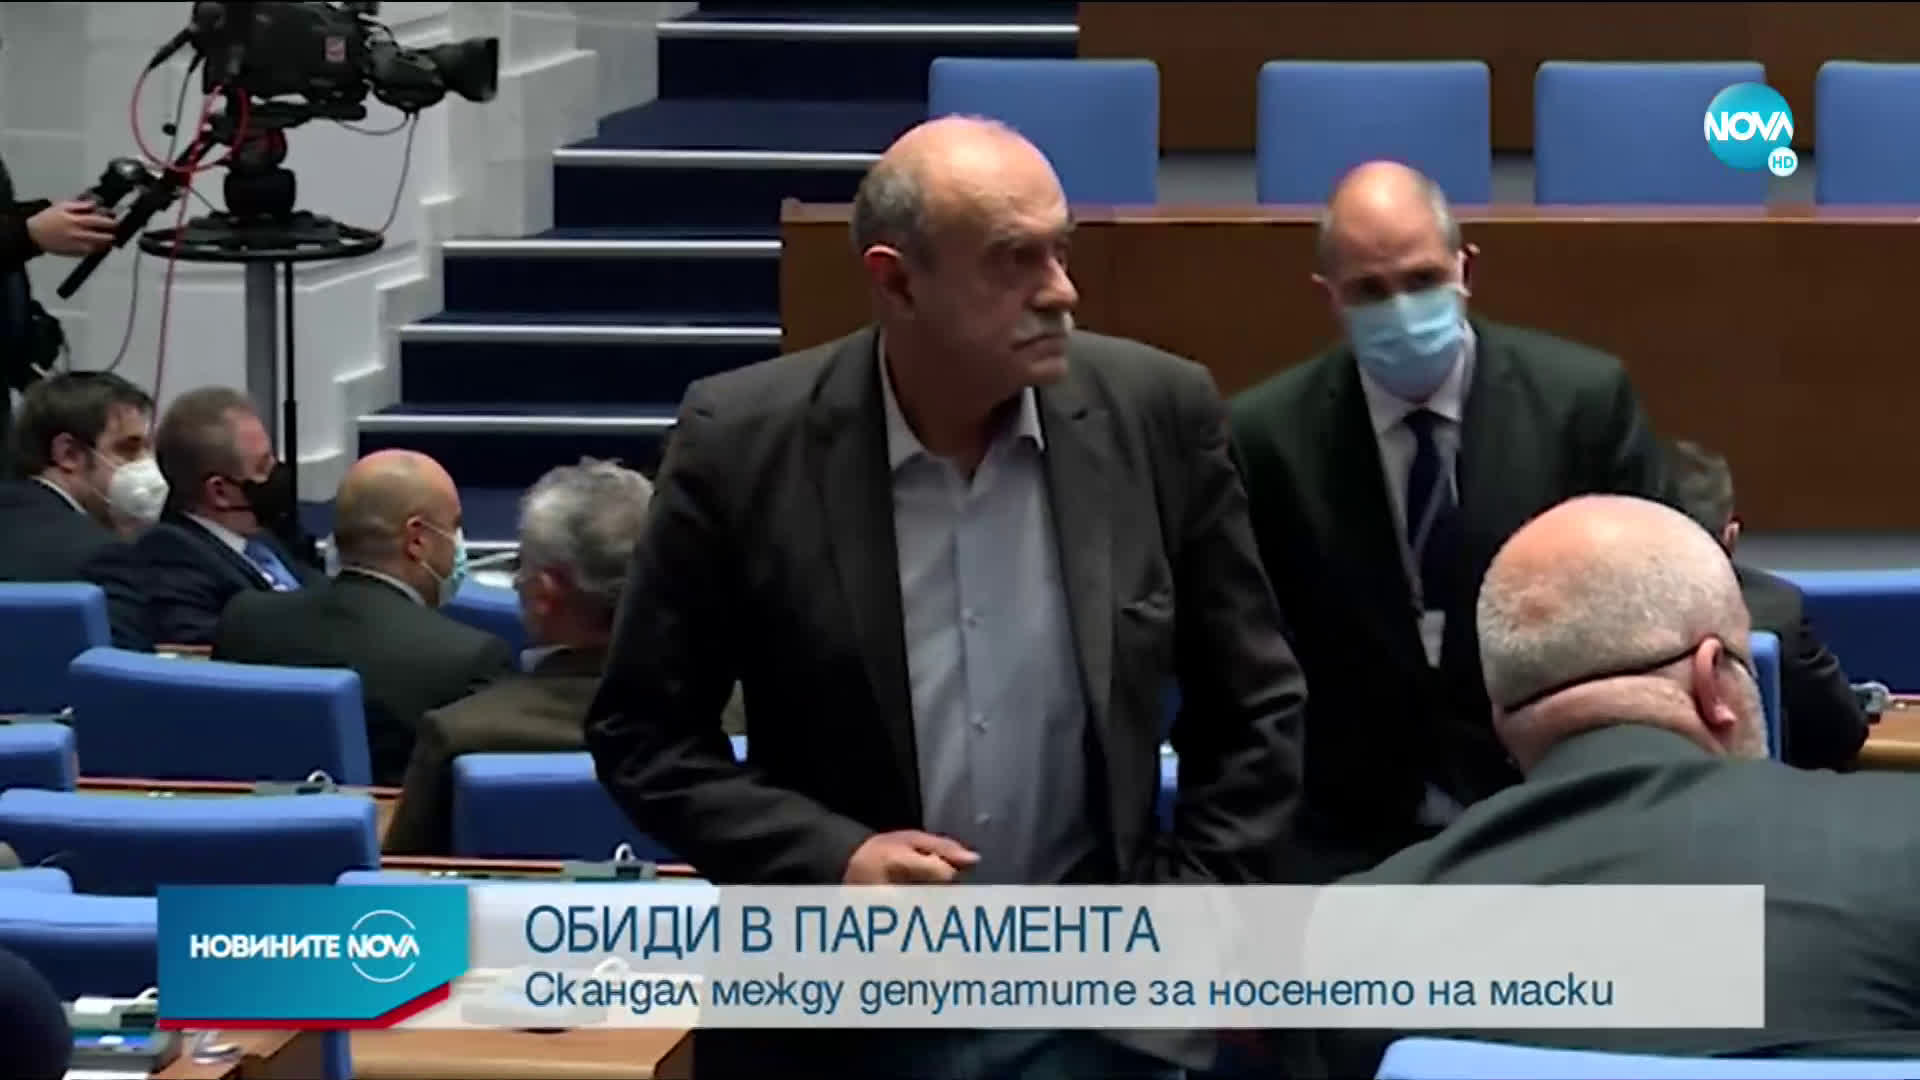 Скандал в Народното събрание заради носенето на маски в пленарната зала